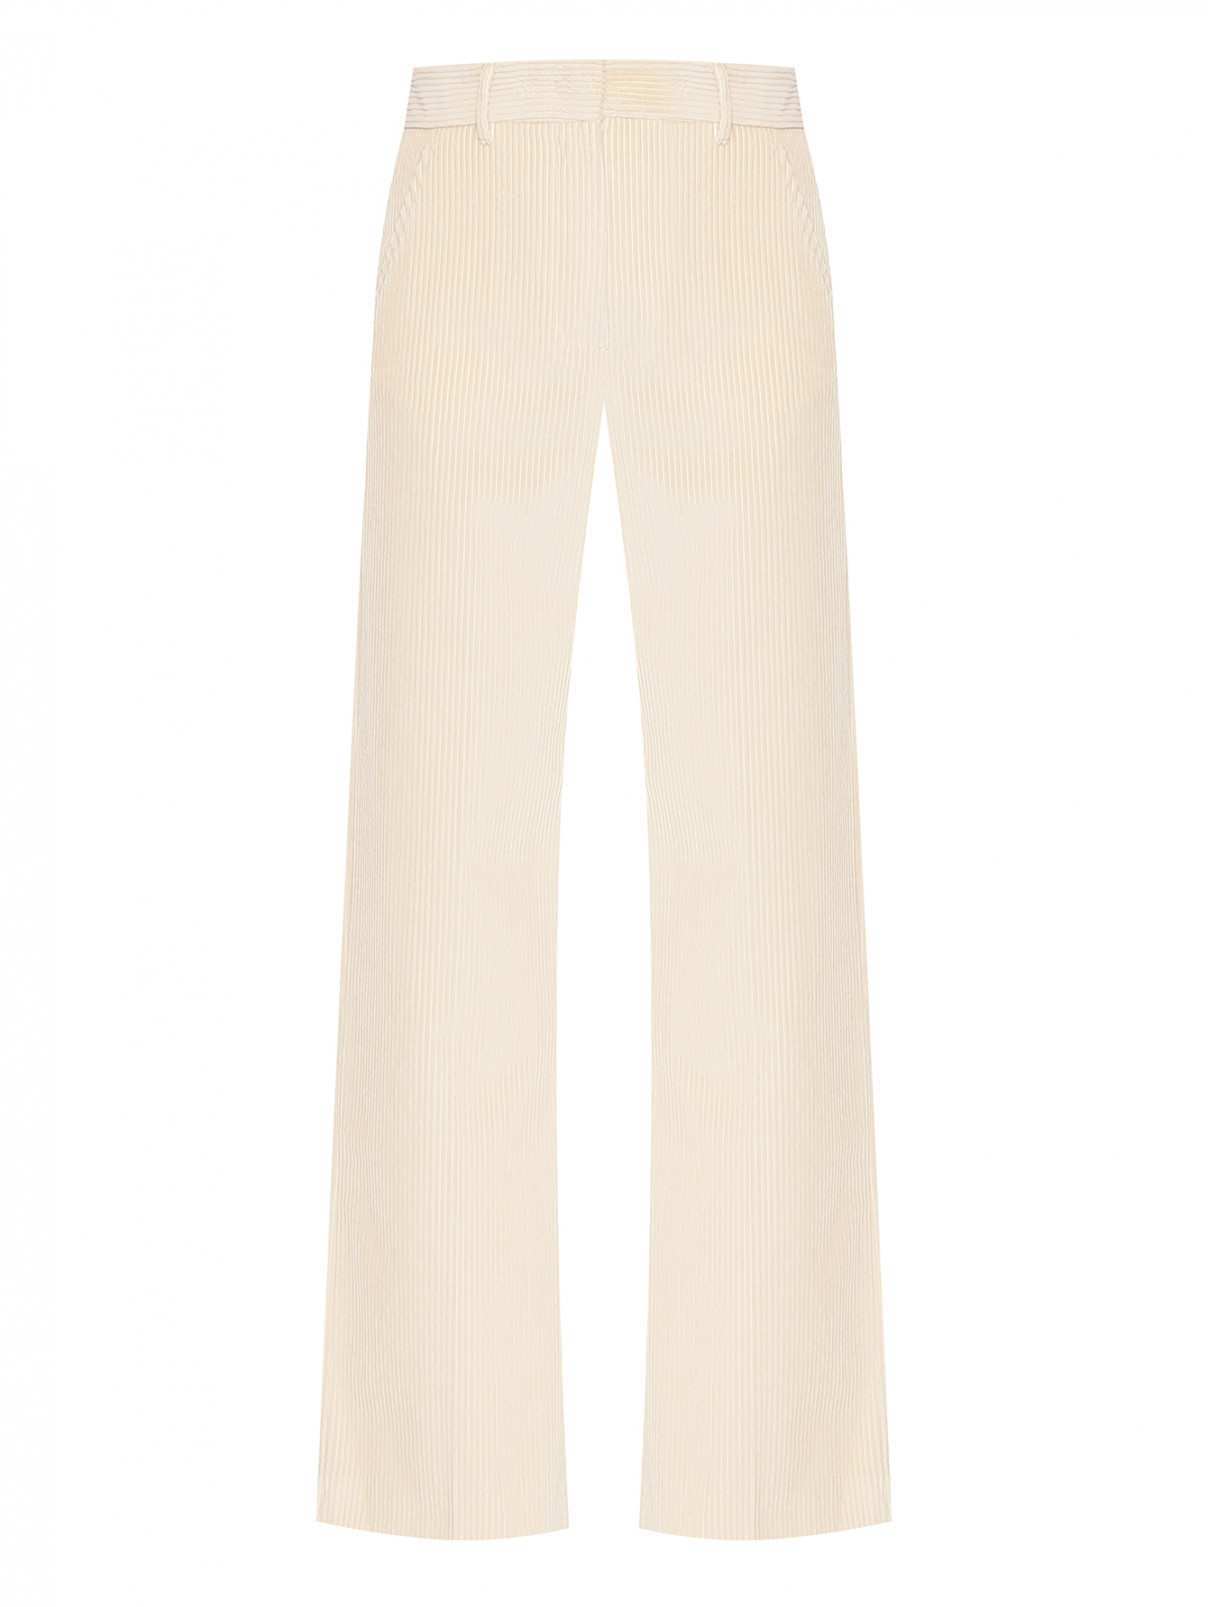 Вельветовые брюки с карманами Weekend Max Mara  –  Общий вид  – Цвет:  Бежевый